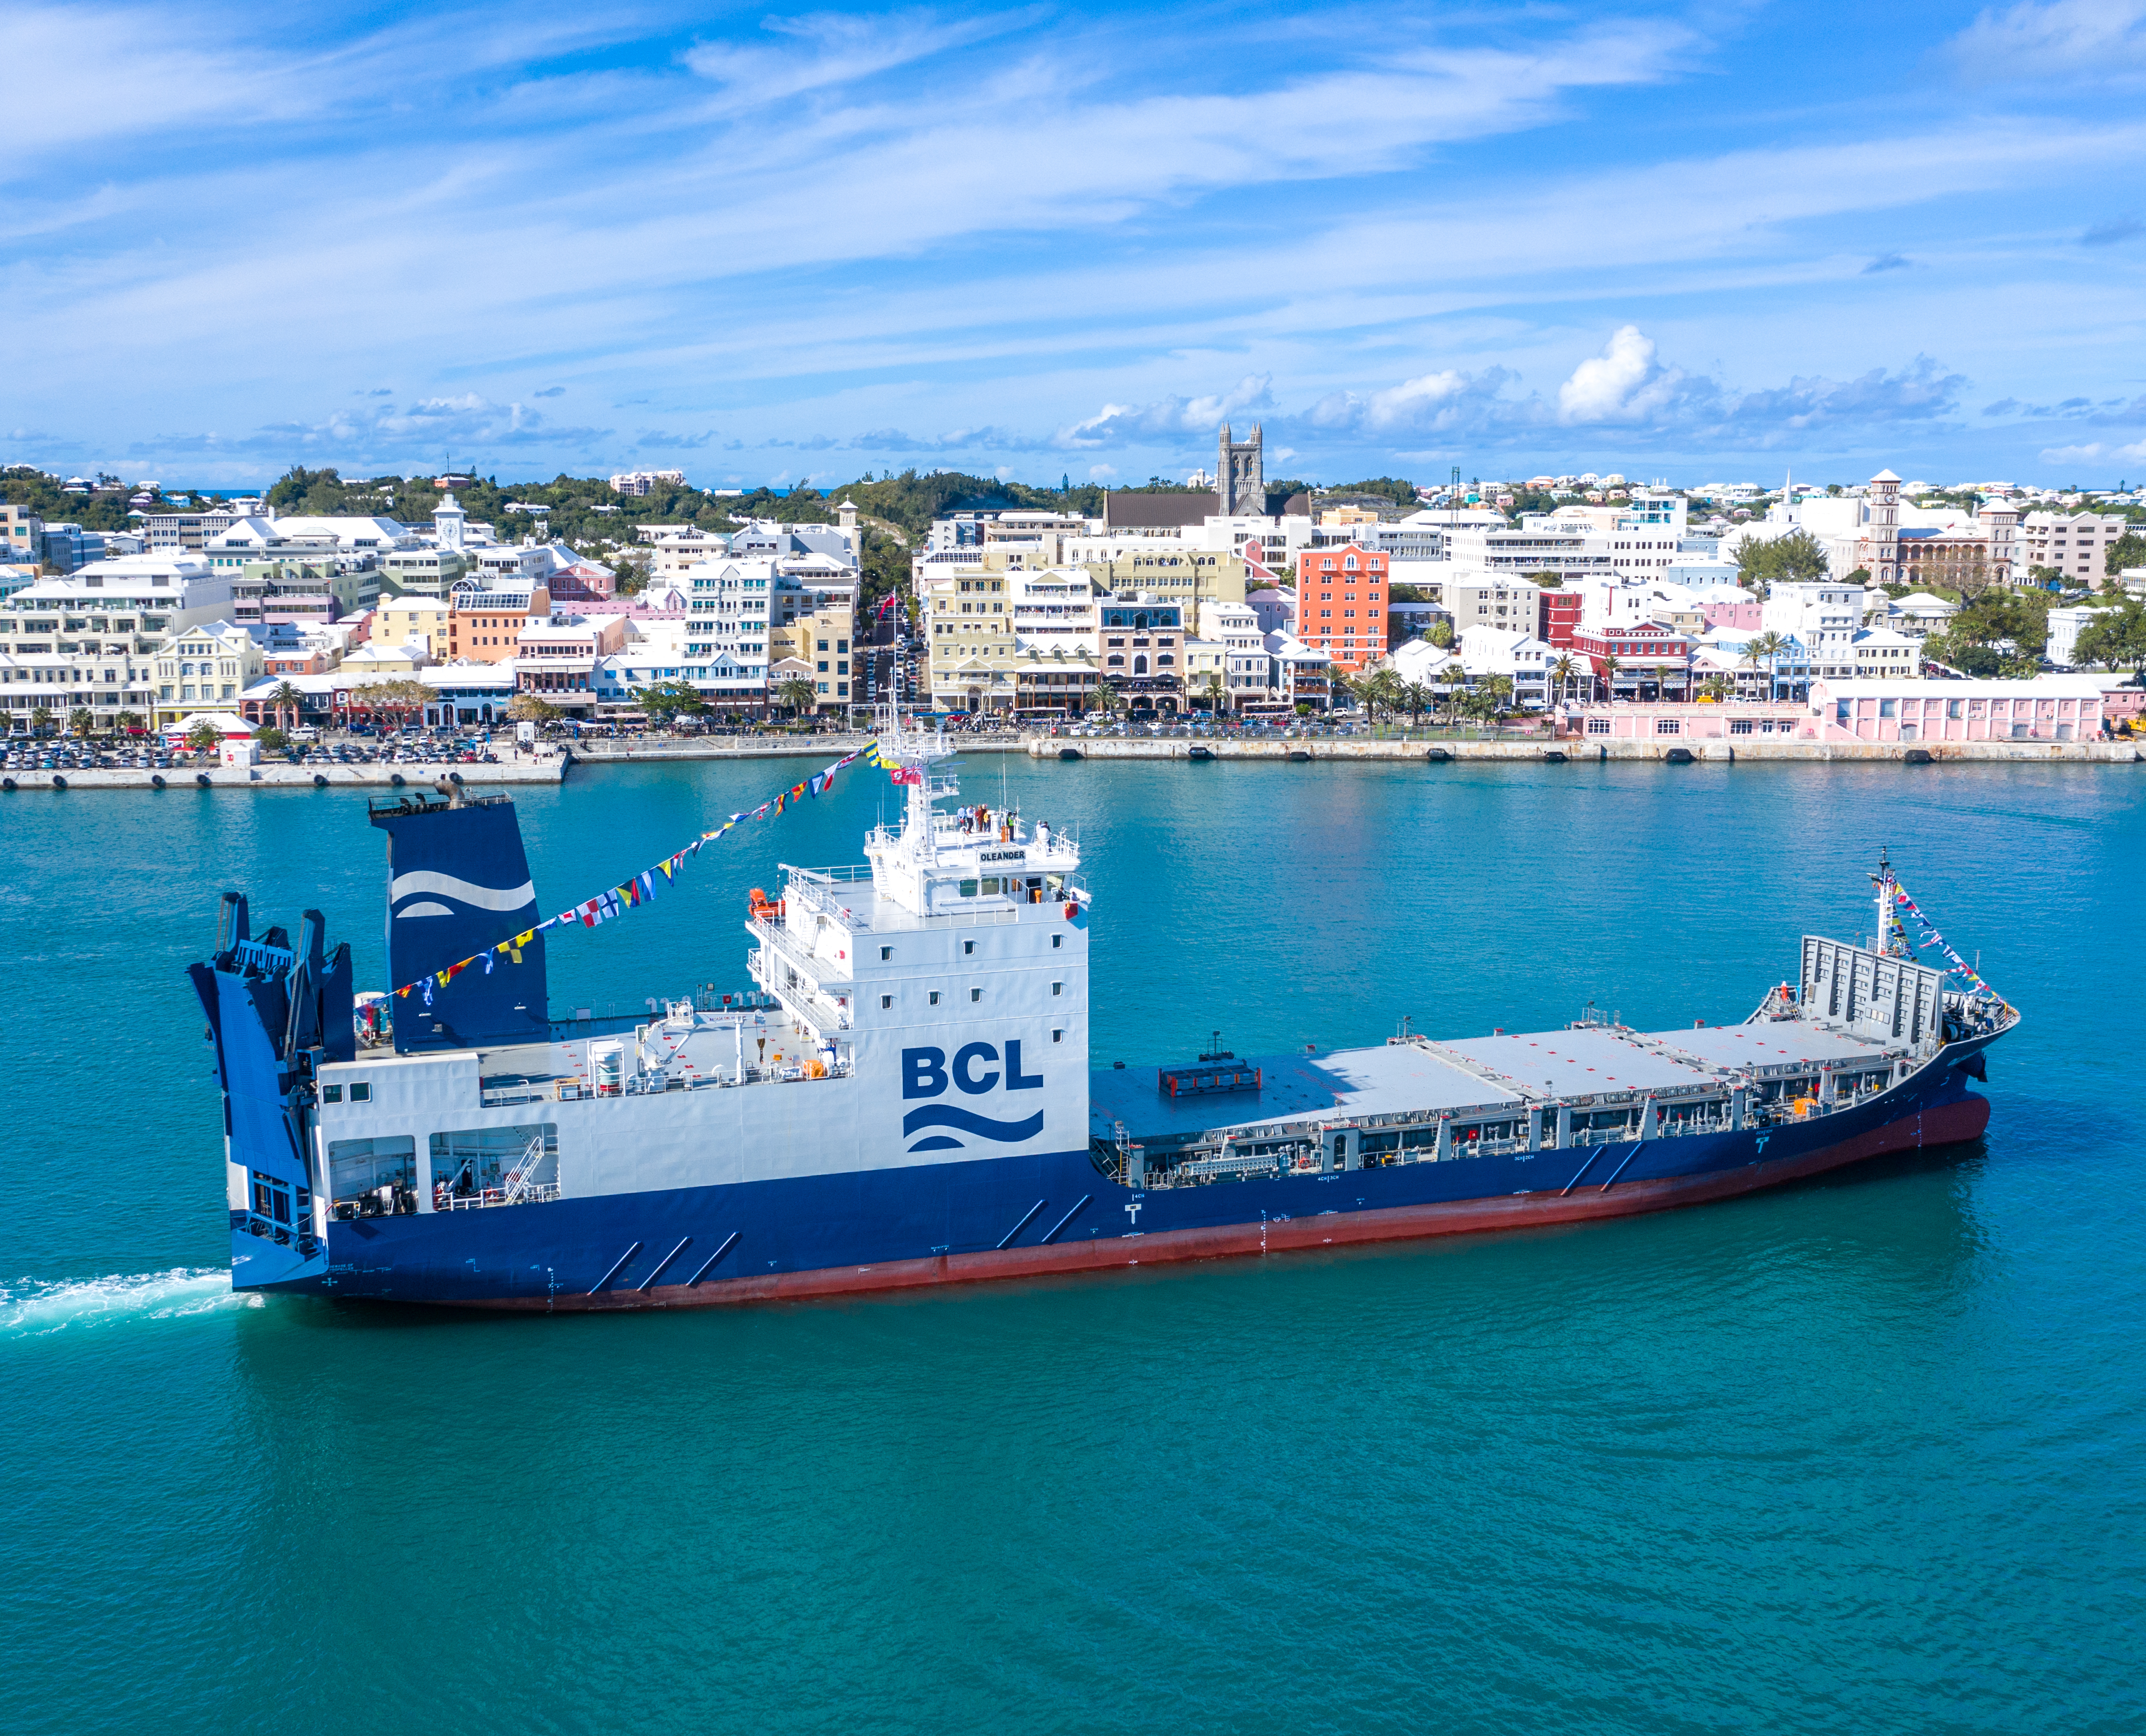 Bermuda Container Line